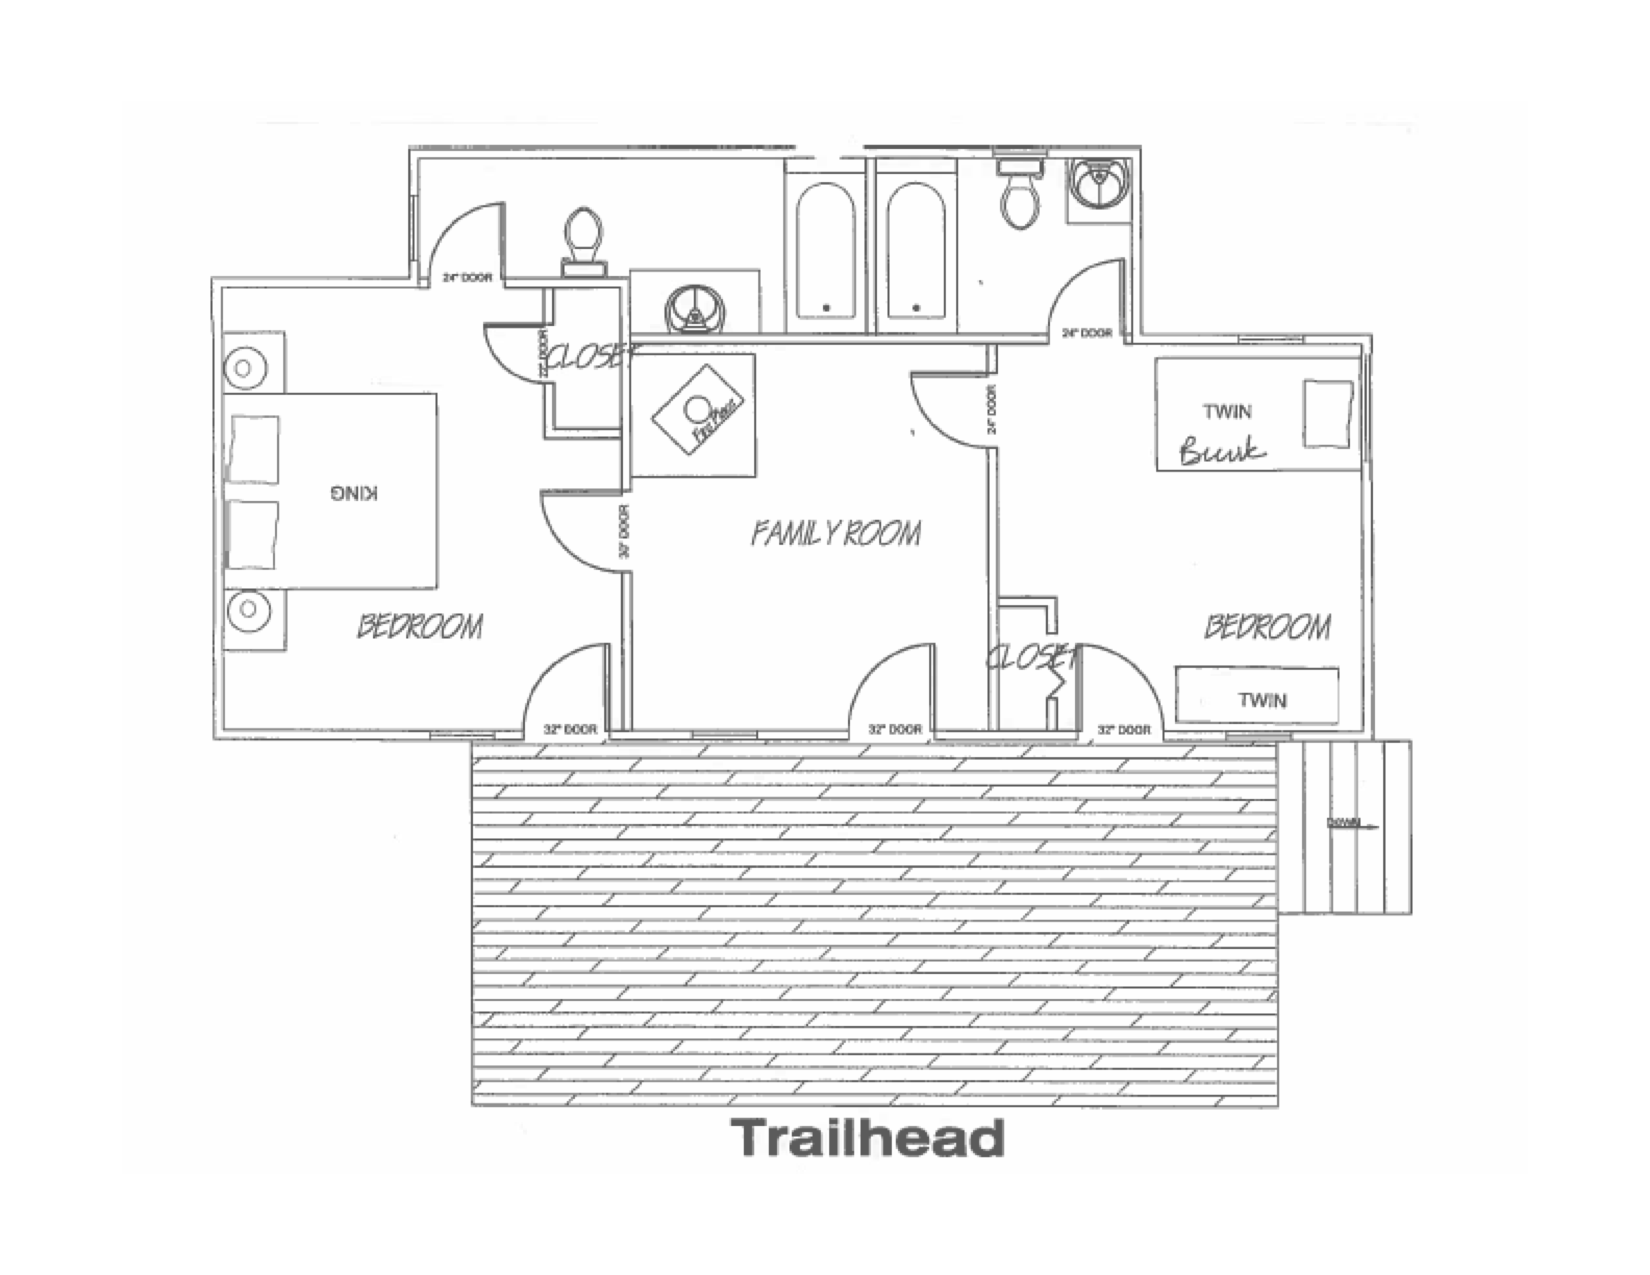 Trailhead floorplan.